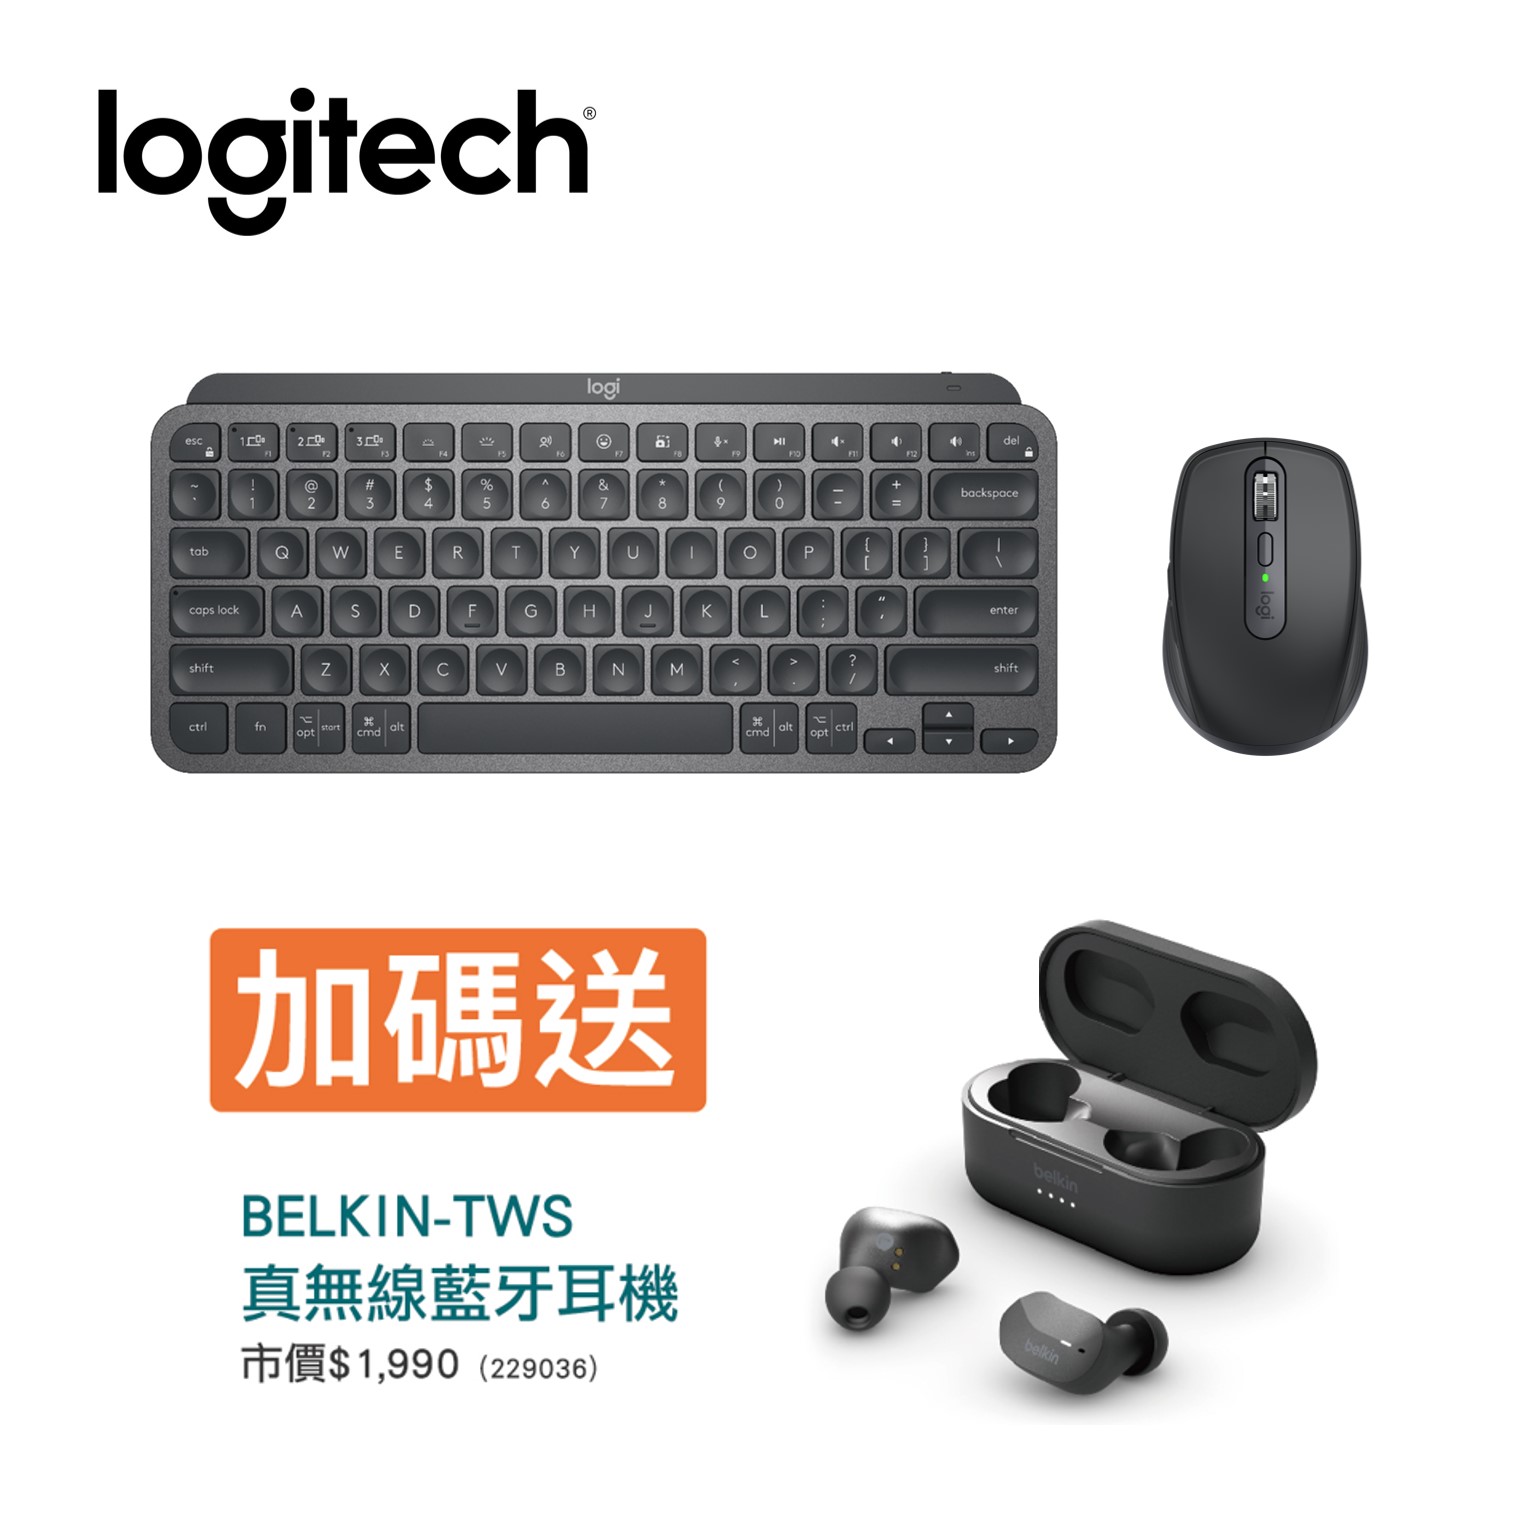 89折再送耳機 | 羅技 Logitech MX Keys Mini 無線鍵盤 簡約黑 + MX Anywhere 3無線滑鼠-石墨灰